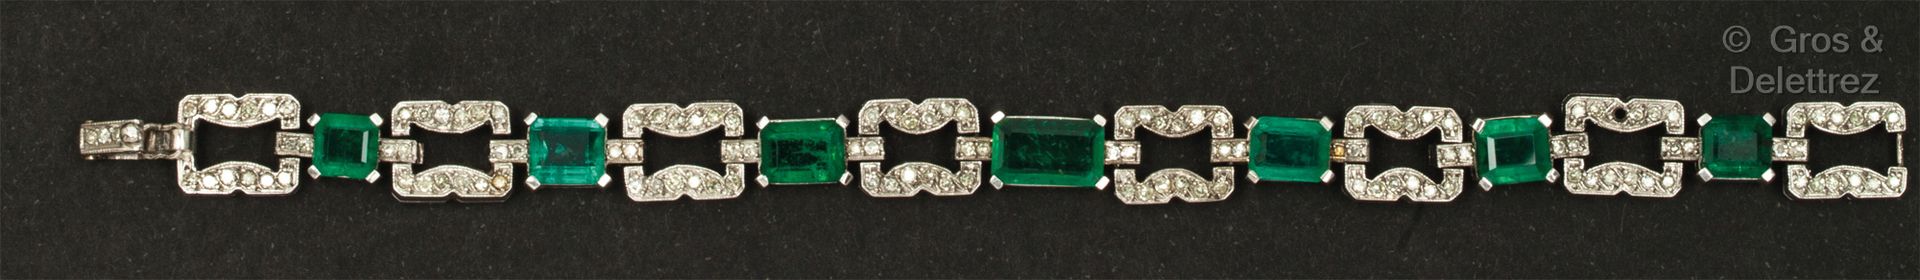 Null 白金铰链式手镯，带几何装饰，全部镶嵌8/8切割钻石，与切割祖母绿交替使用。长度：16厘米。毛重：23.9克。